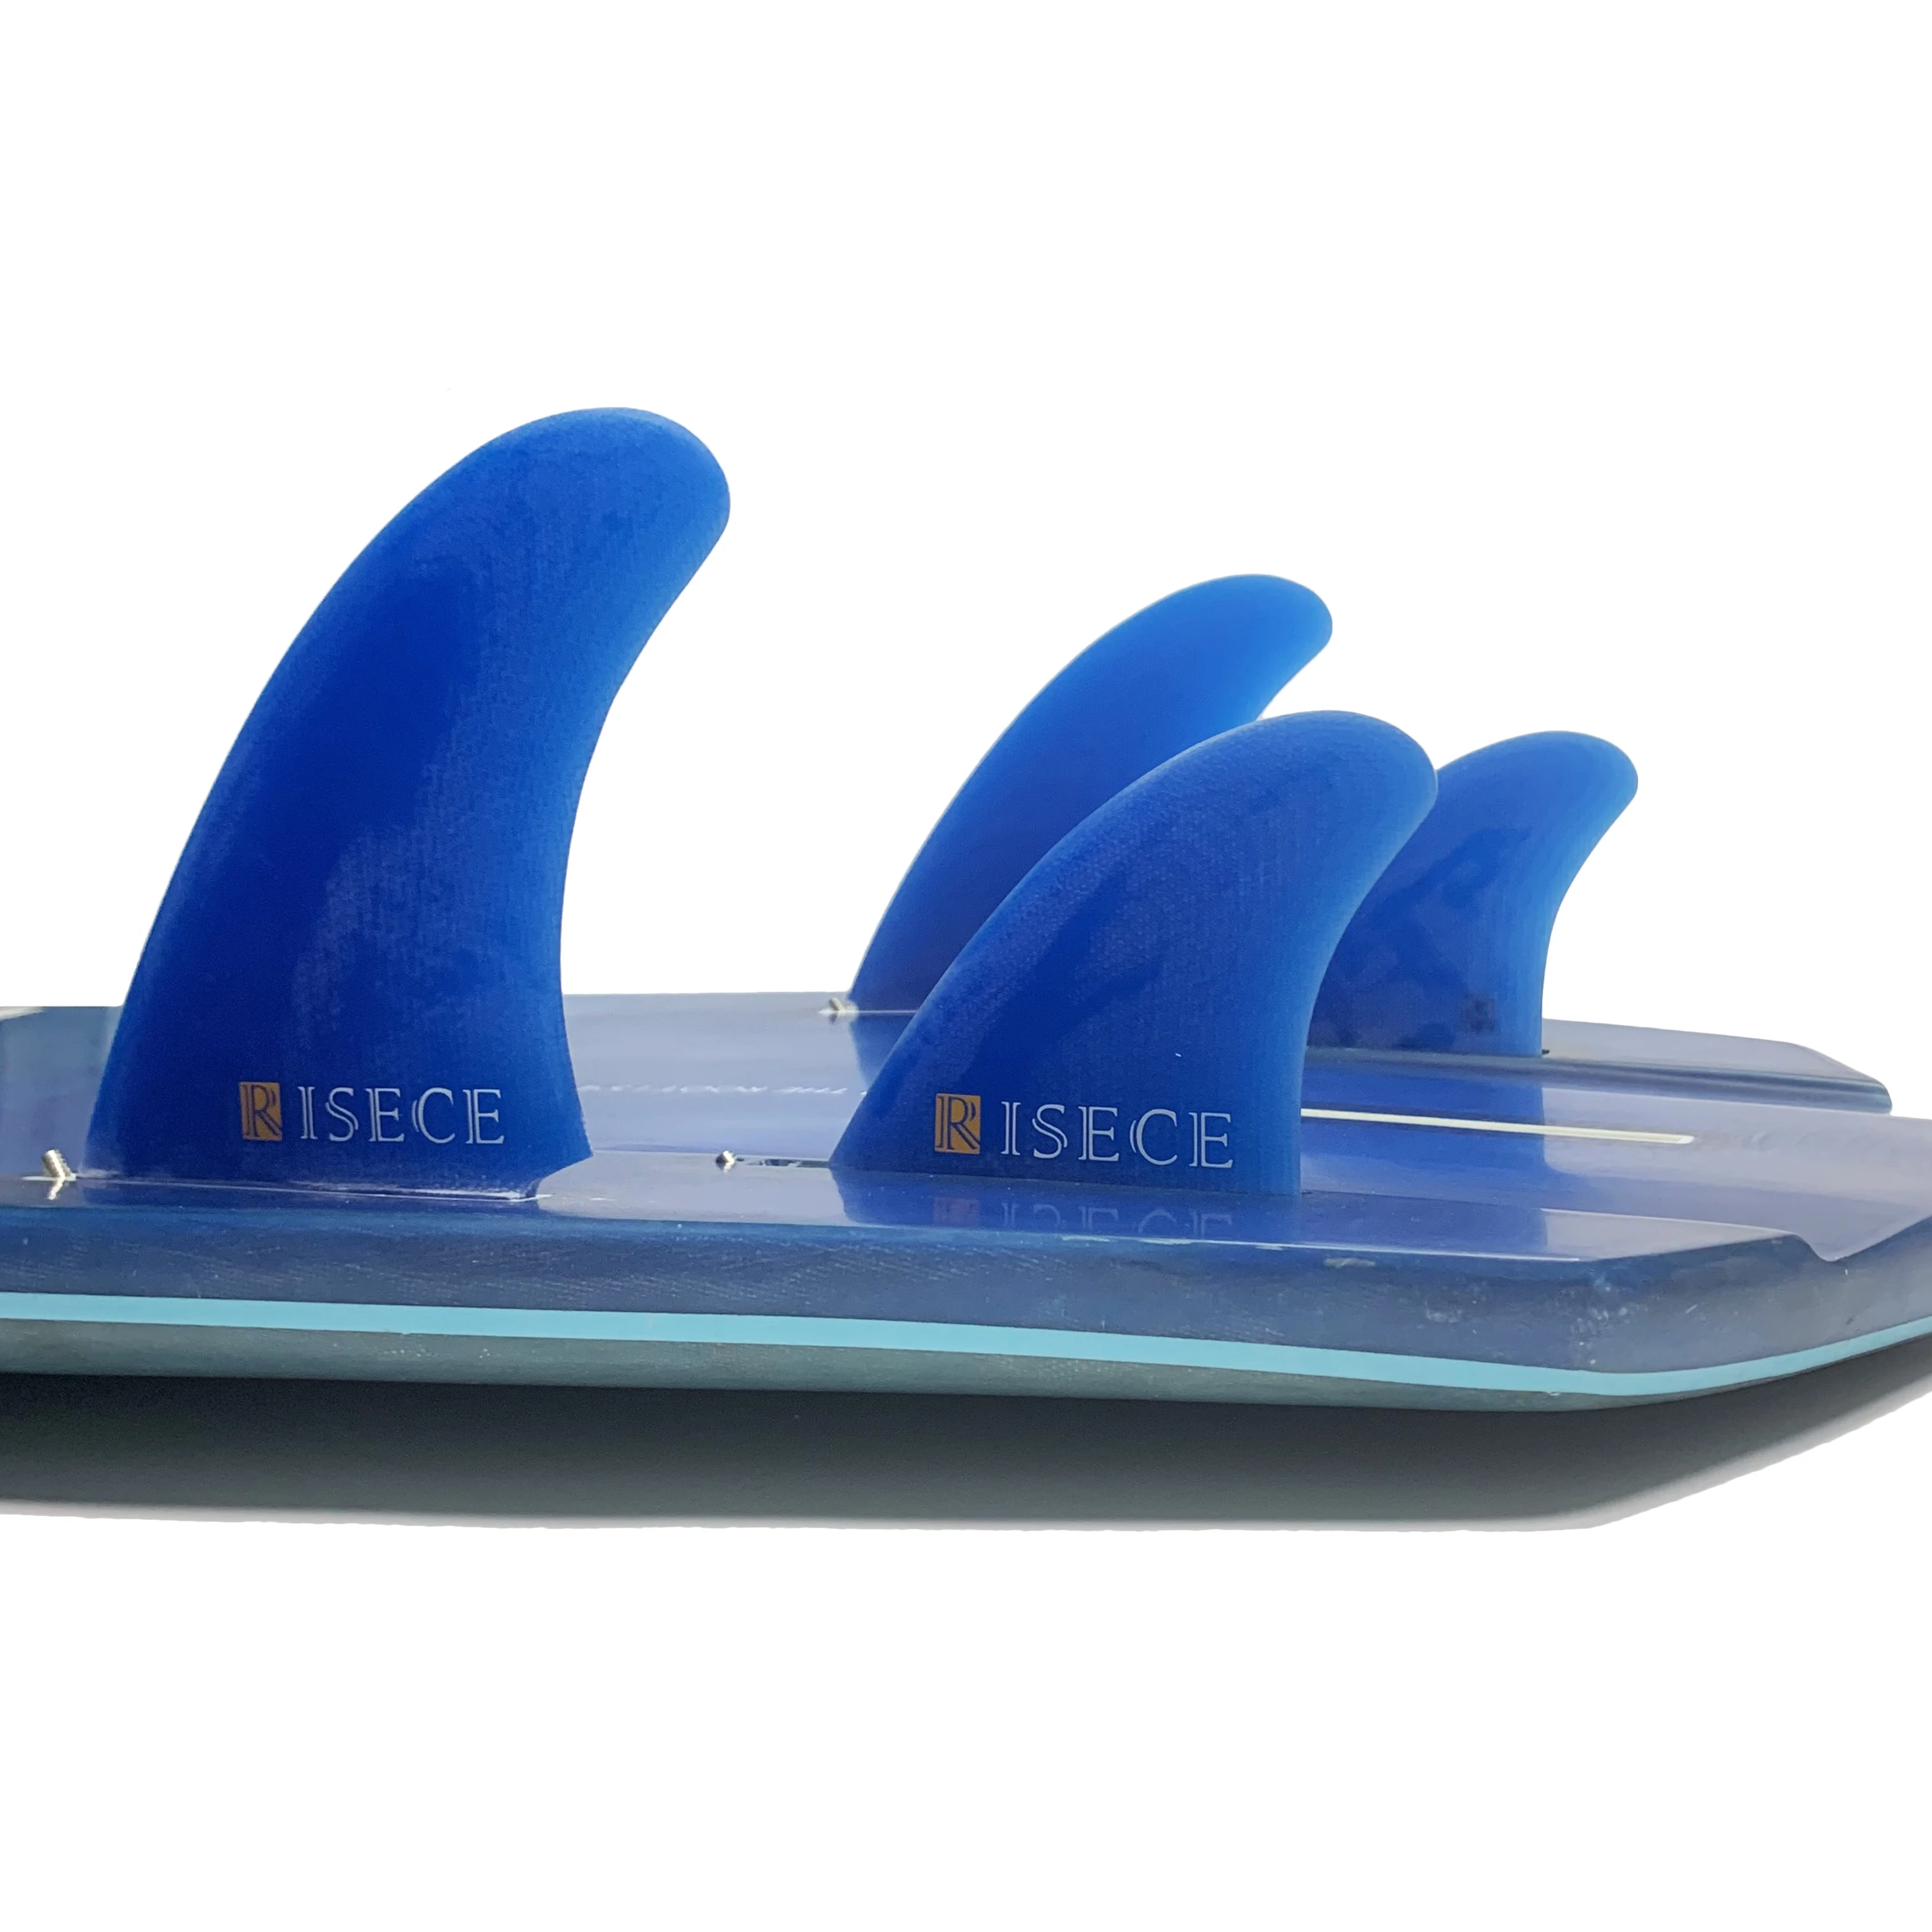 RISECE FCS 2 Четырехлопастные Плавники для доски для серфинга из Стекловолокна GFK Fiberglass Quad Surfboard Fin Single Tab Синие Плавники Из Стекловолокна 4 Штуки Quad Set Изображение 1 